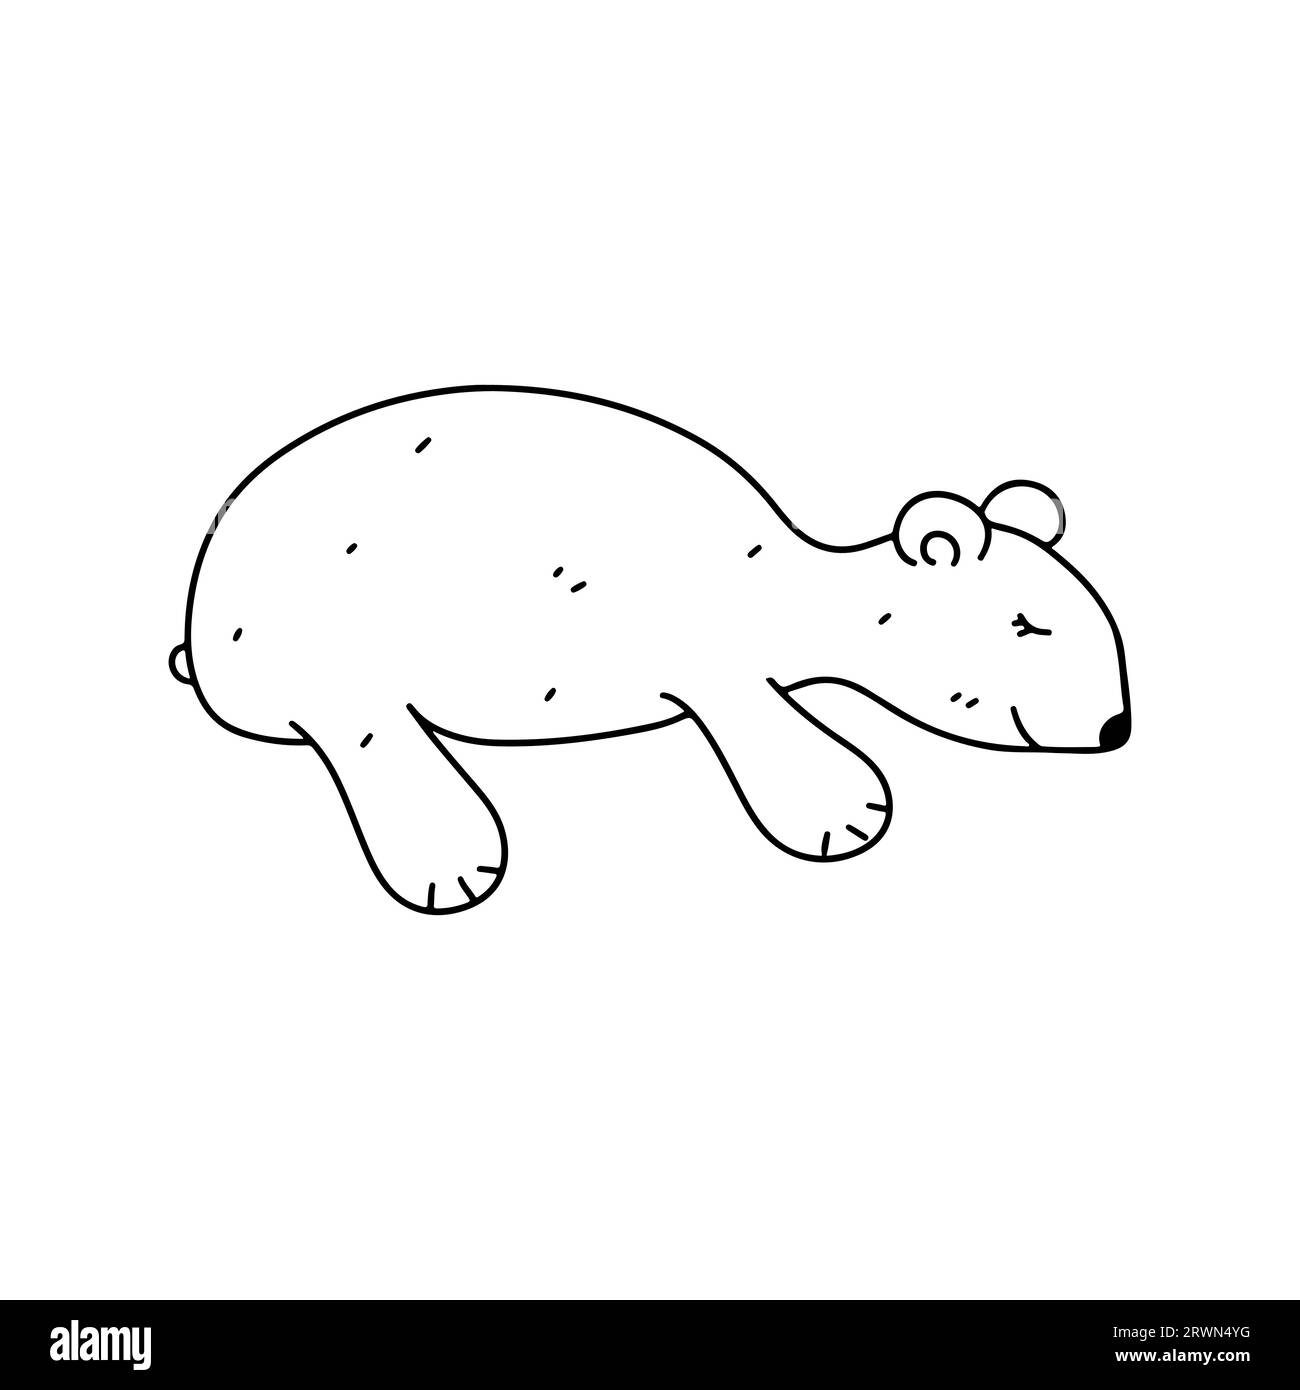 Niedlicher kleiner Eisbär. Handgezeichneter Doodle-Stil. Vektorillustration isoliert auf weiß. Malseite. Stock Vektor